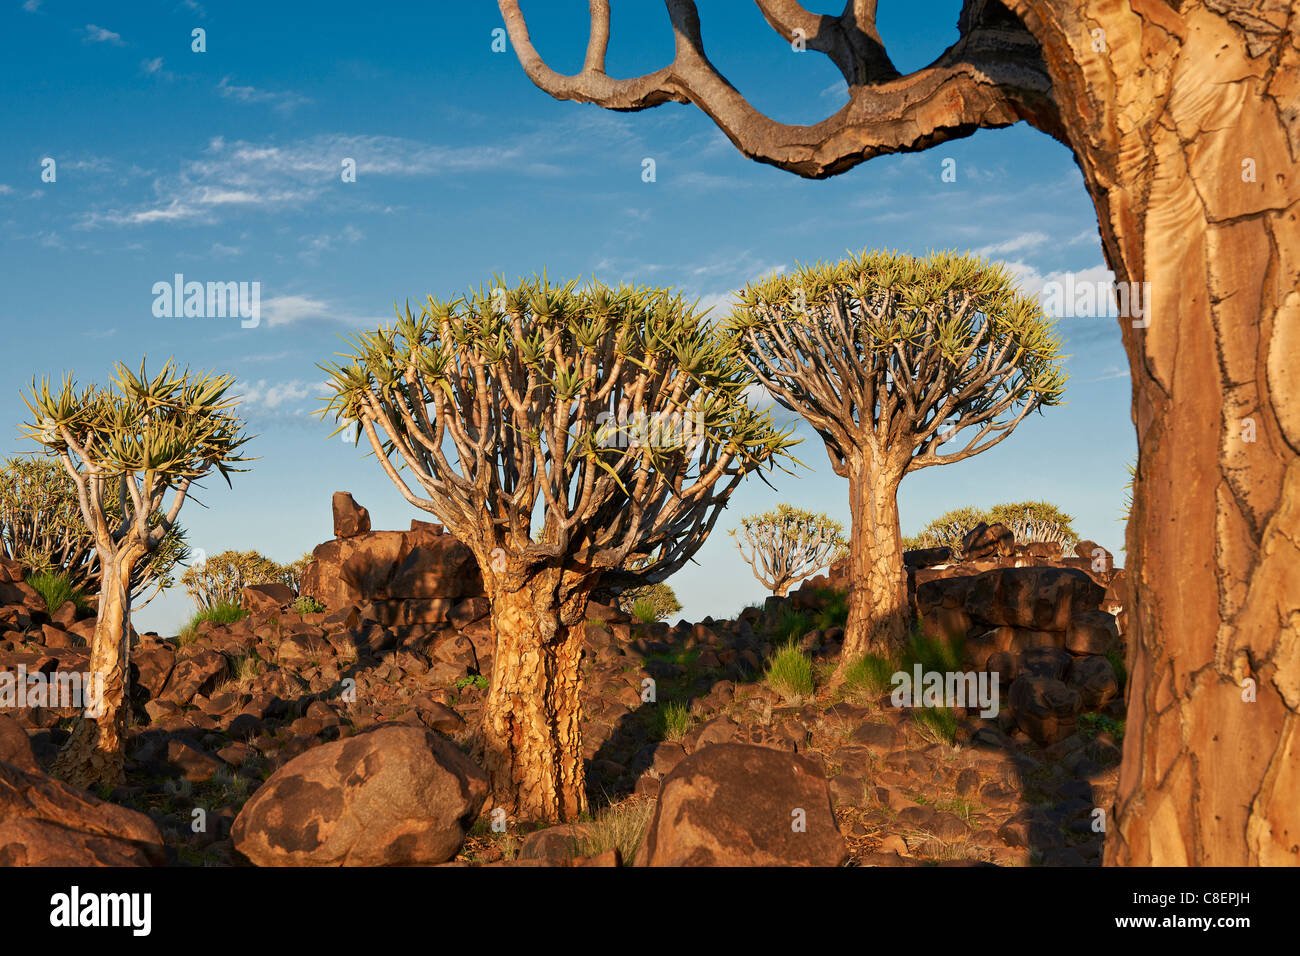 Quiver Tree Forest, L'Aloe dichotoma, ferme Garas, Mesosaurus Fossil Site, Keetmanshoop, Namibie, Afrique Banque D'Images